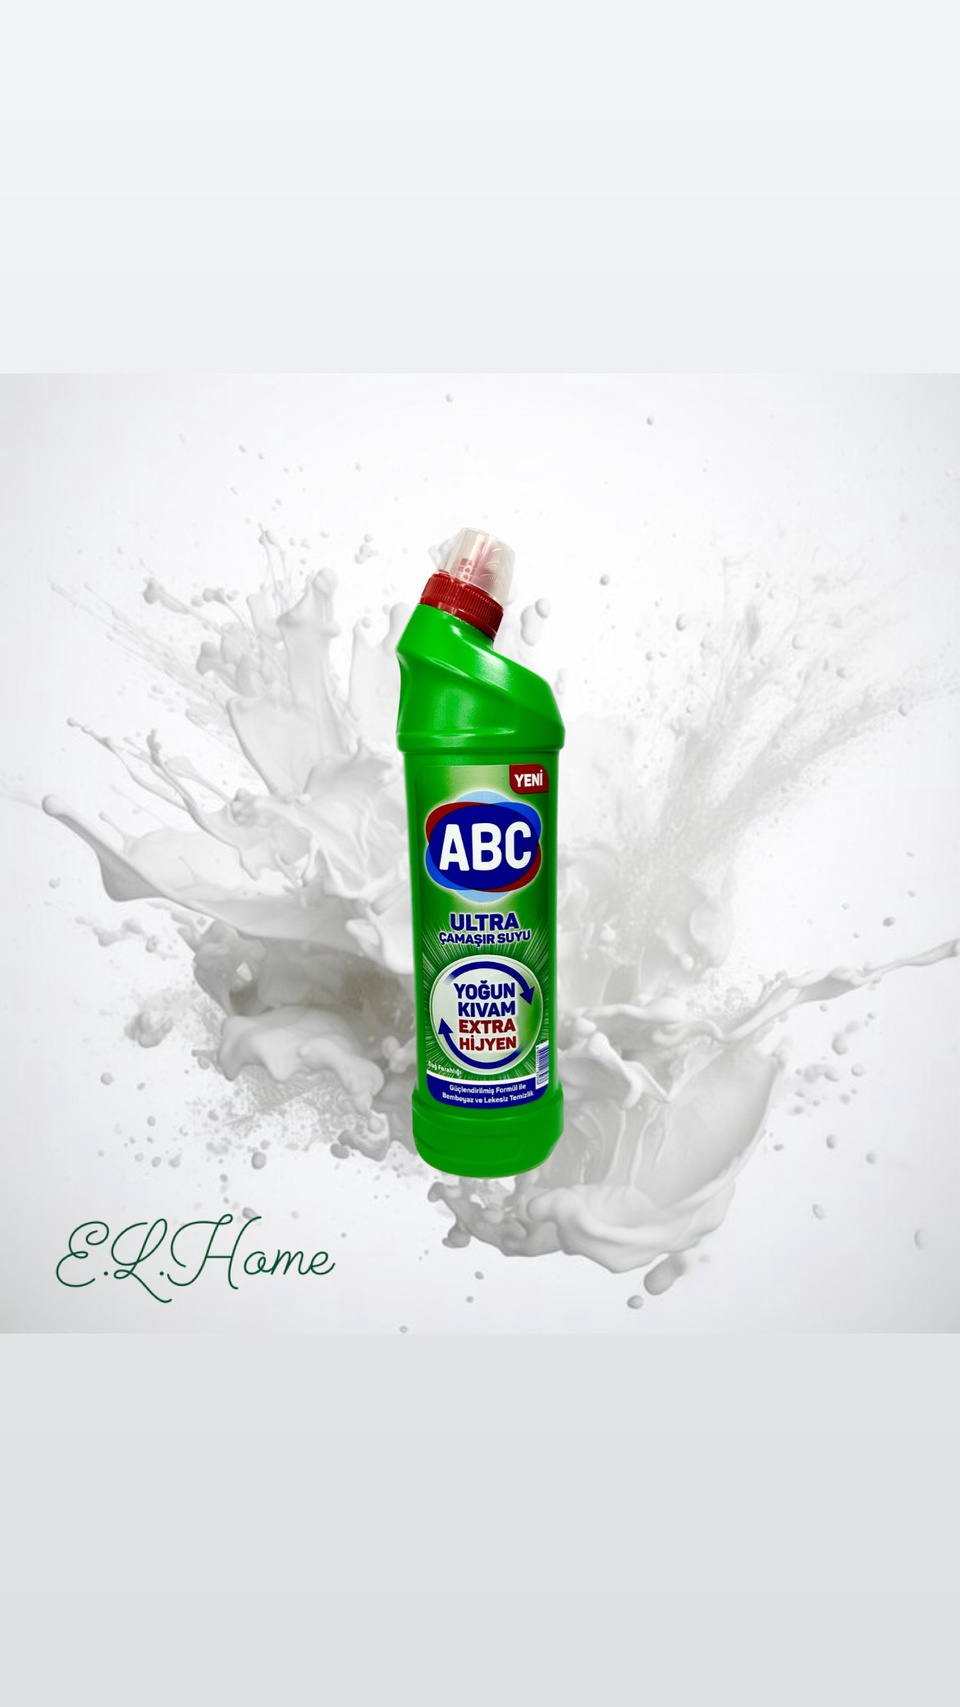 Чистящее средство ABC Горный воздух для ванны и унитаза, 750 мл. - 180 ₽, заказать онлайн.